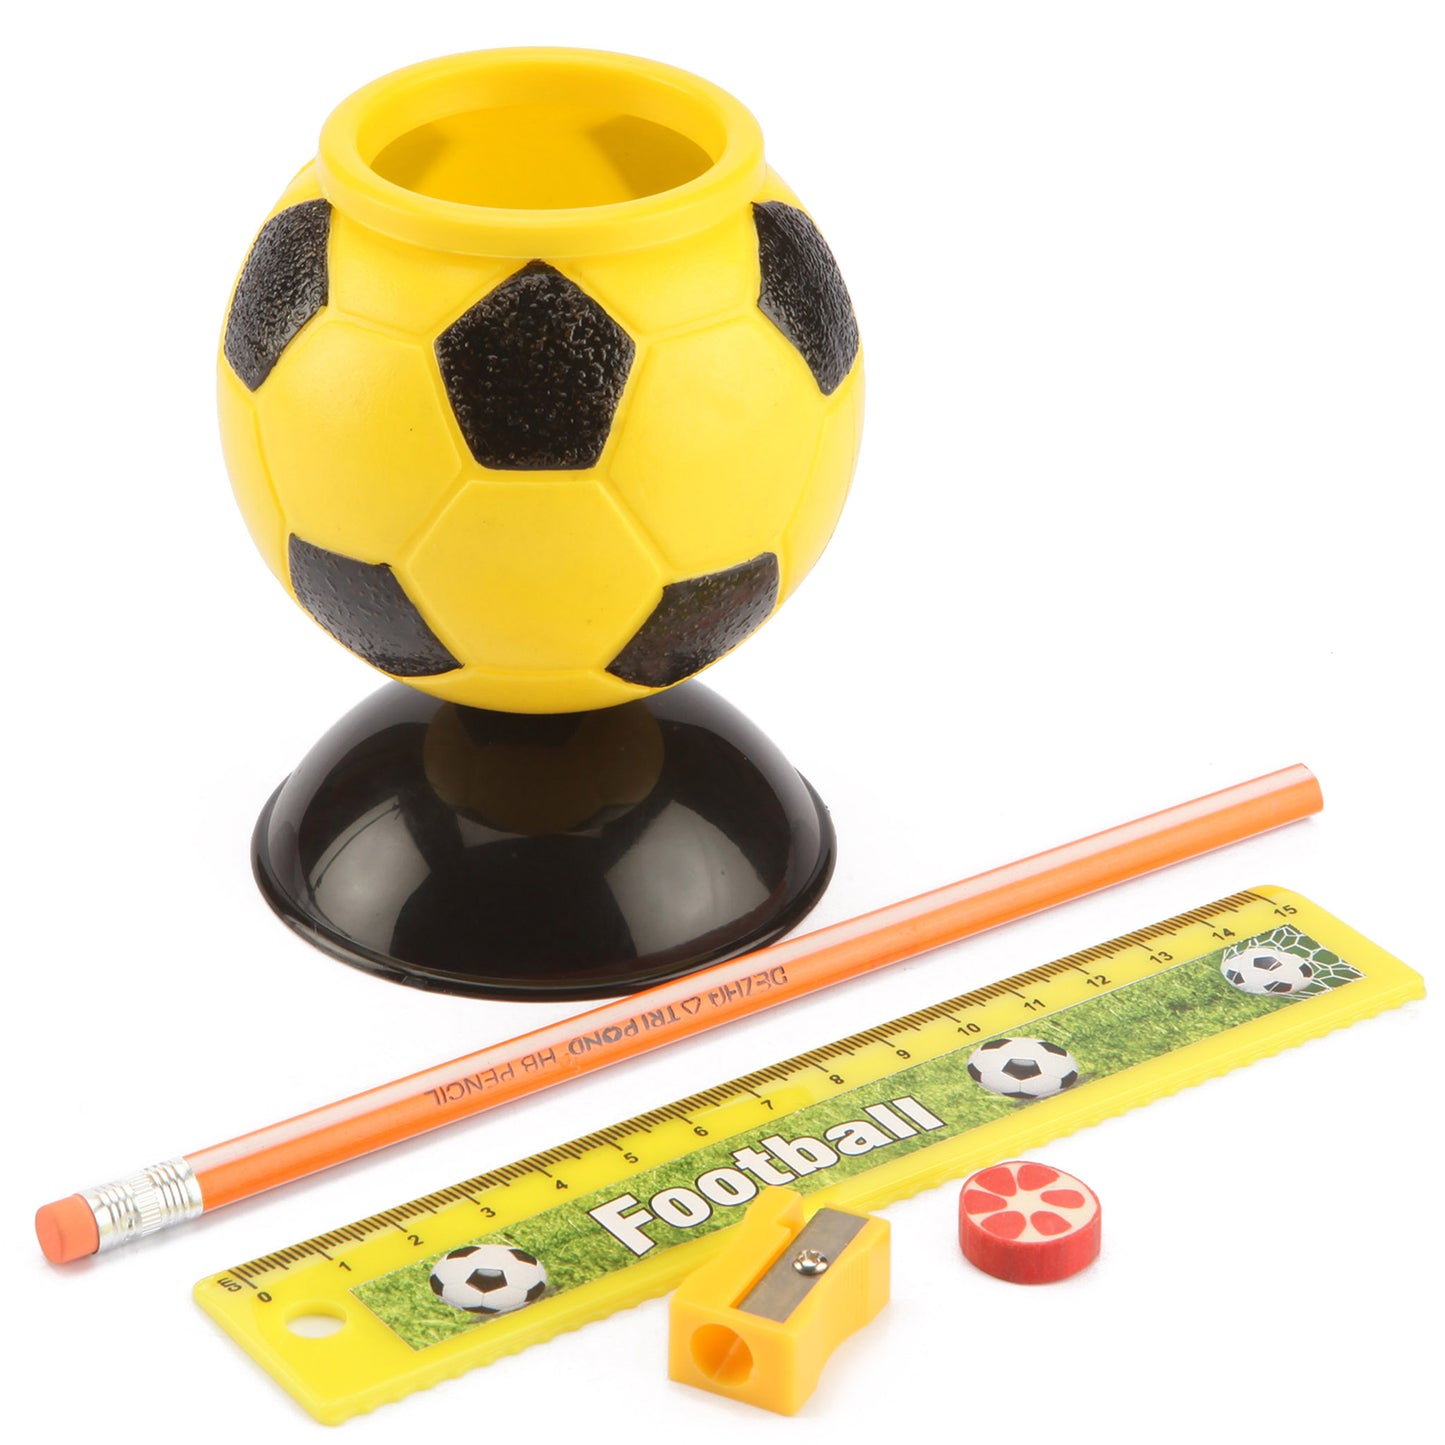 Football Stationery Kit